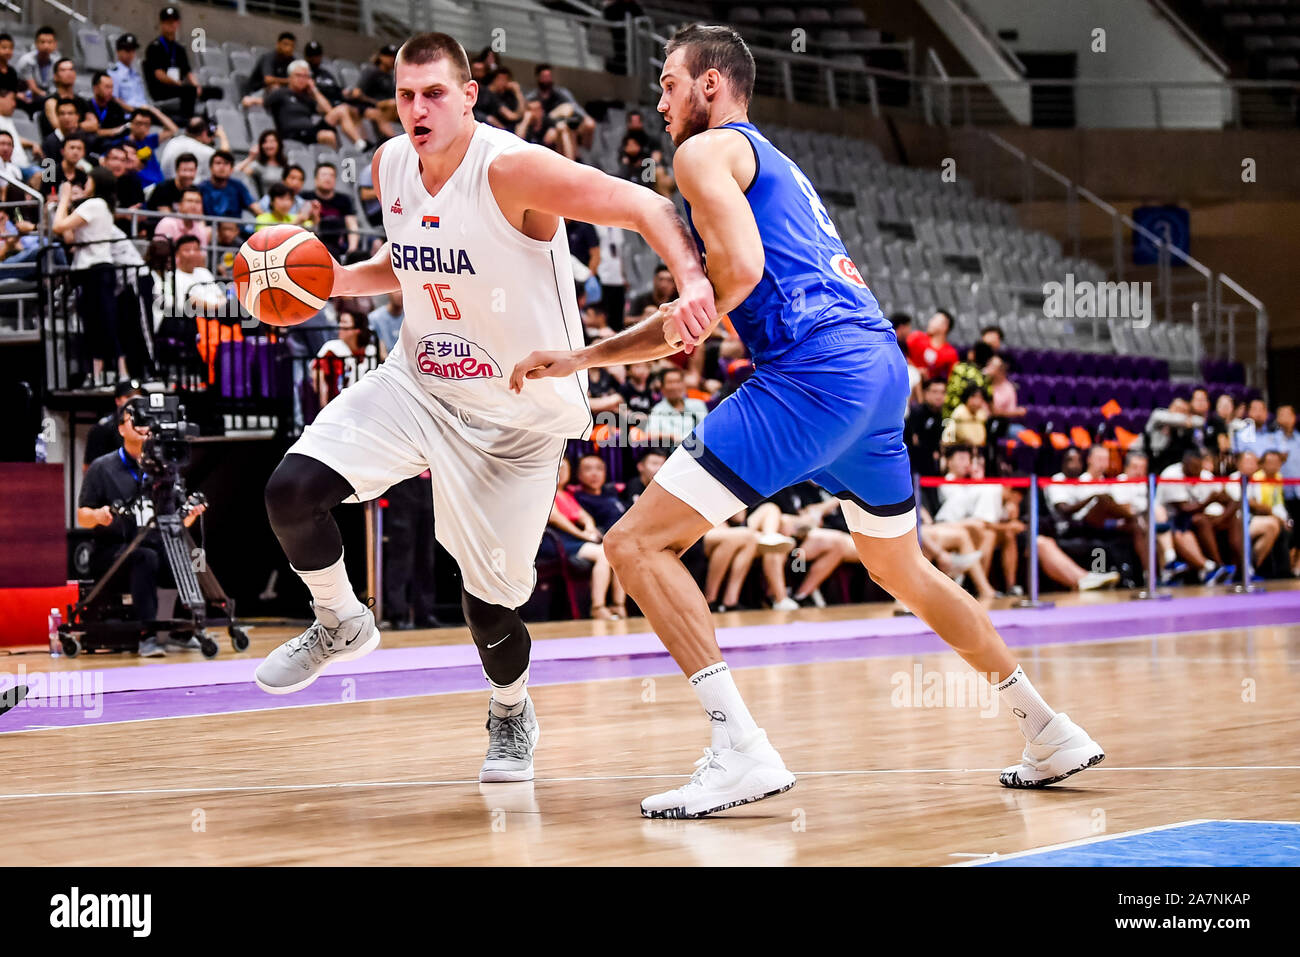 Nikola Jokic, un Serbo giocatore di pallacanestro professionale, sinistra, mantiene la sfera mentre ha difeso da Danilo Gallinari, un italiano di basket professionistico pl Foto Stock